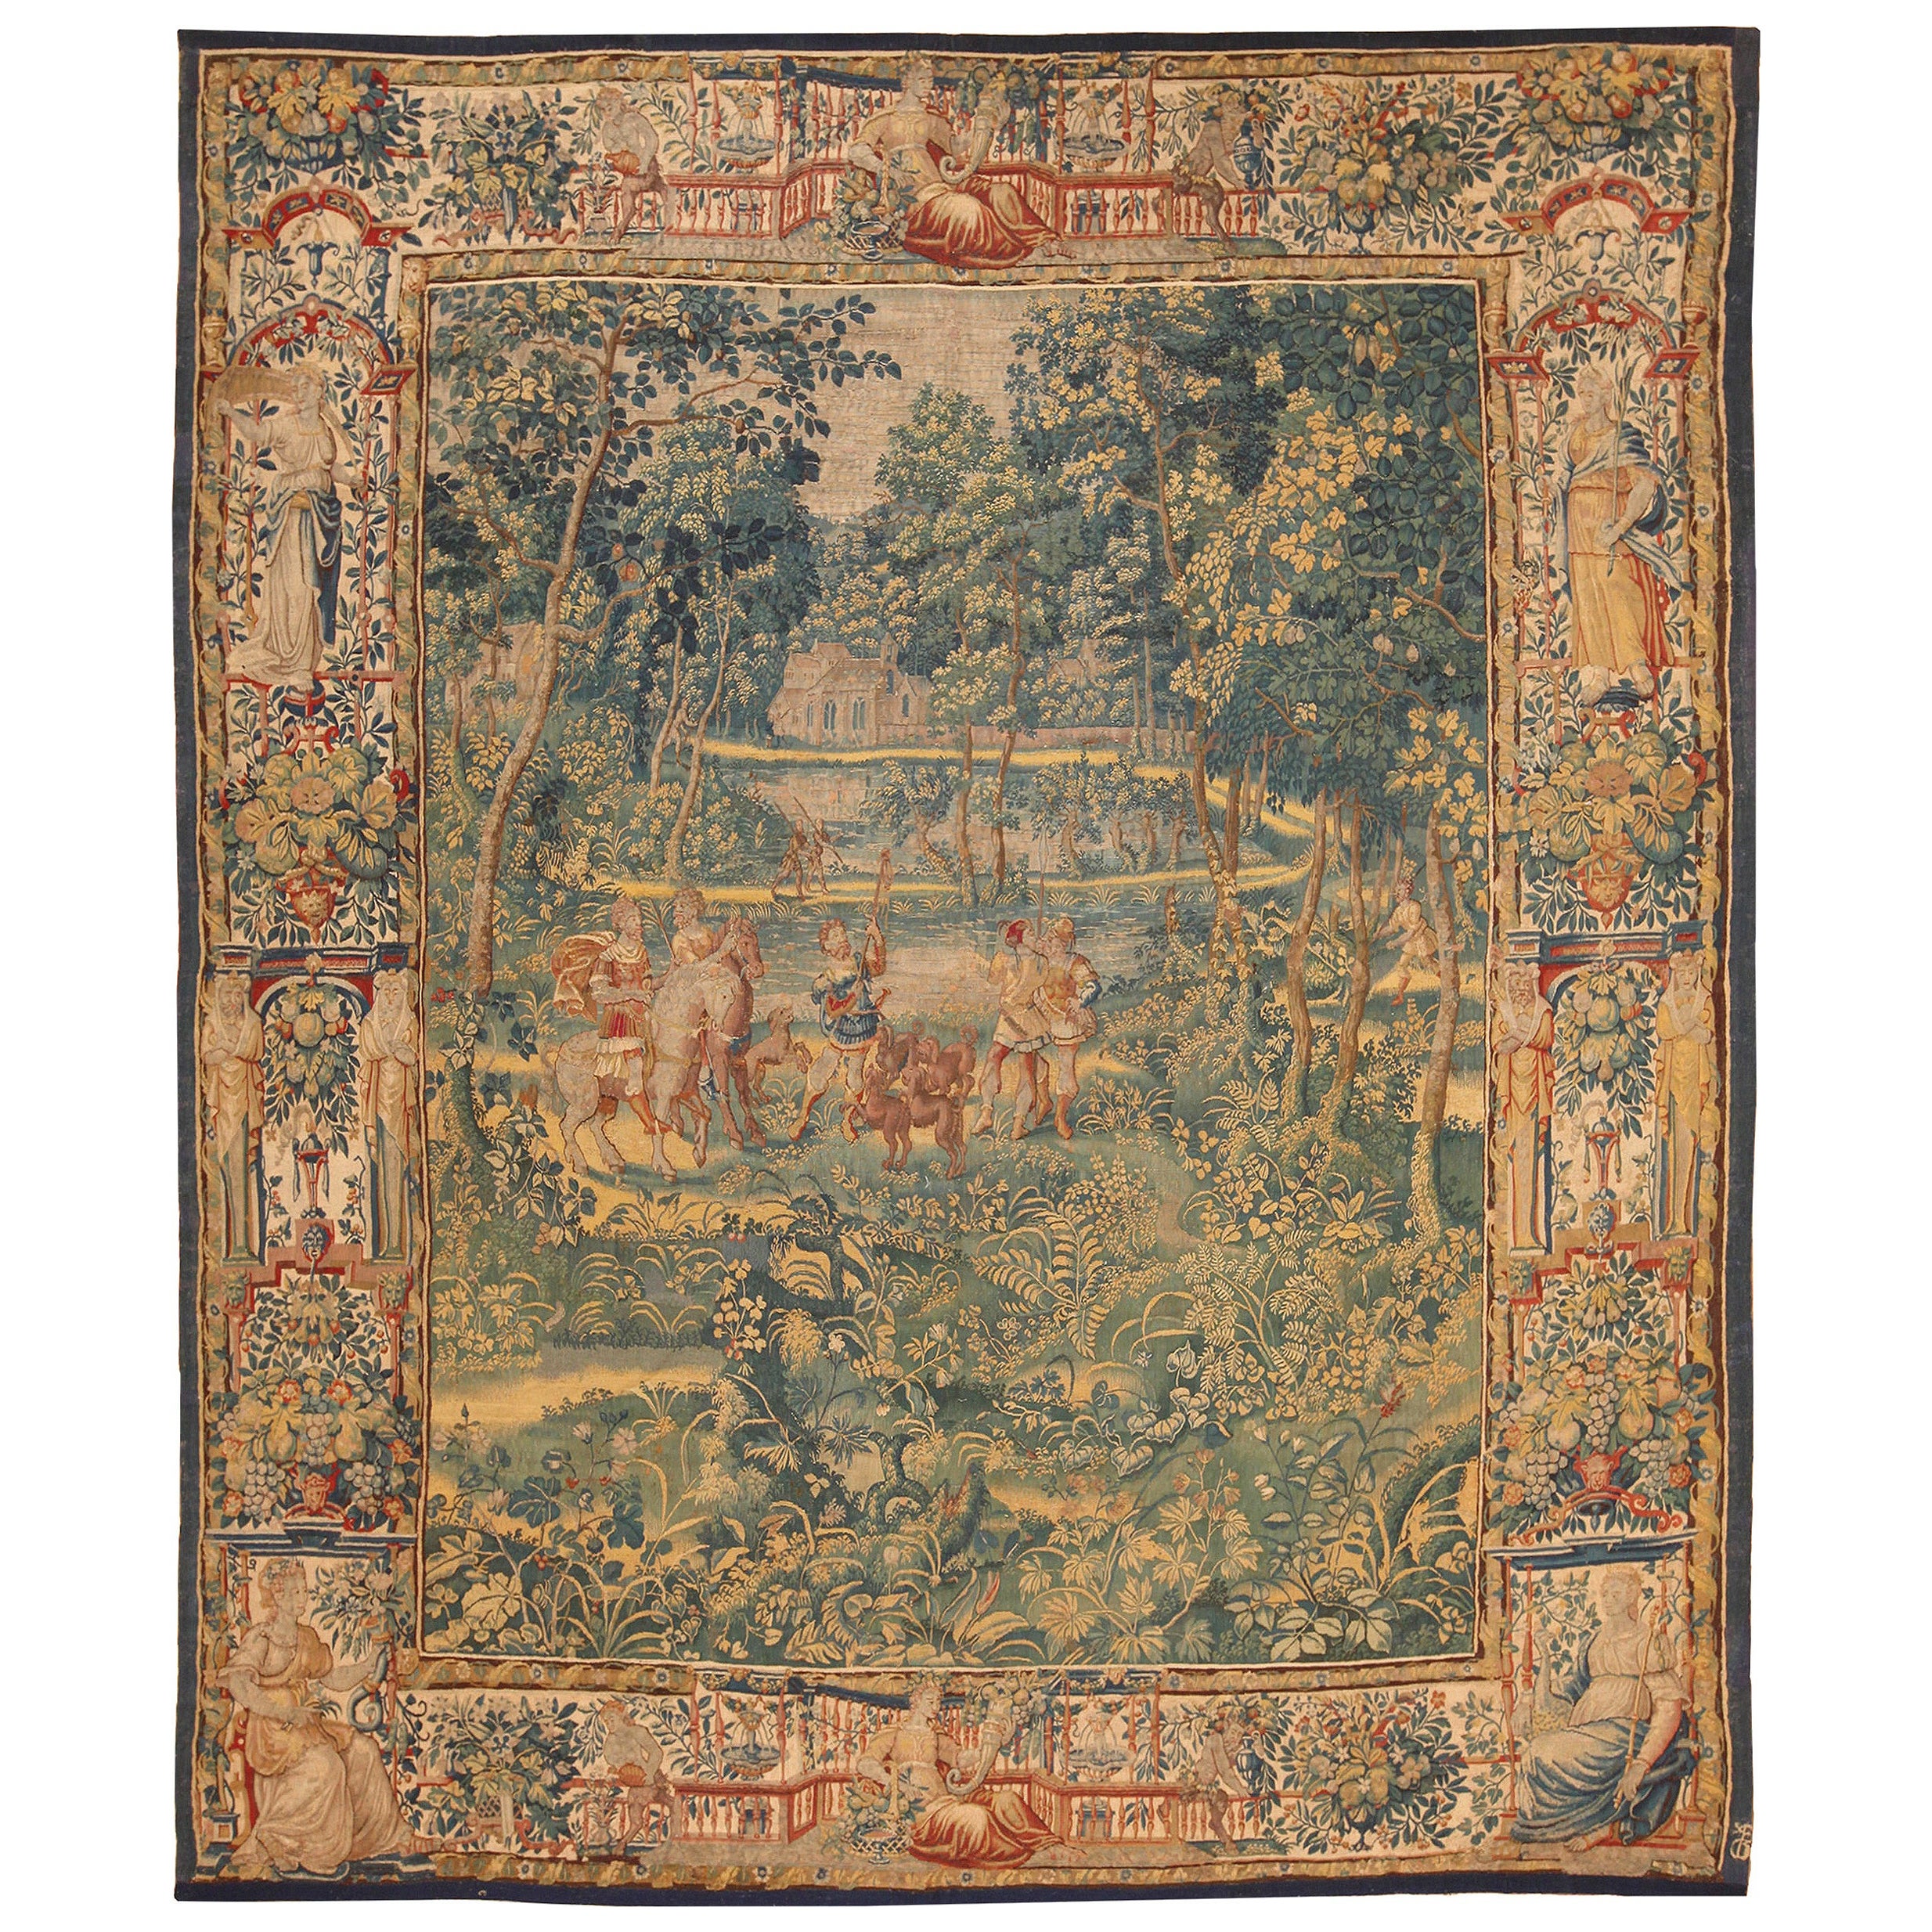 Atemberaubender antiker französischer Wandteppich aus Wolle und Seide aus dem 17. Jahrhundert 8'7" x 10'3"